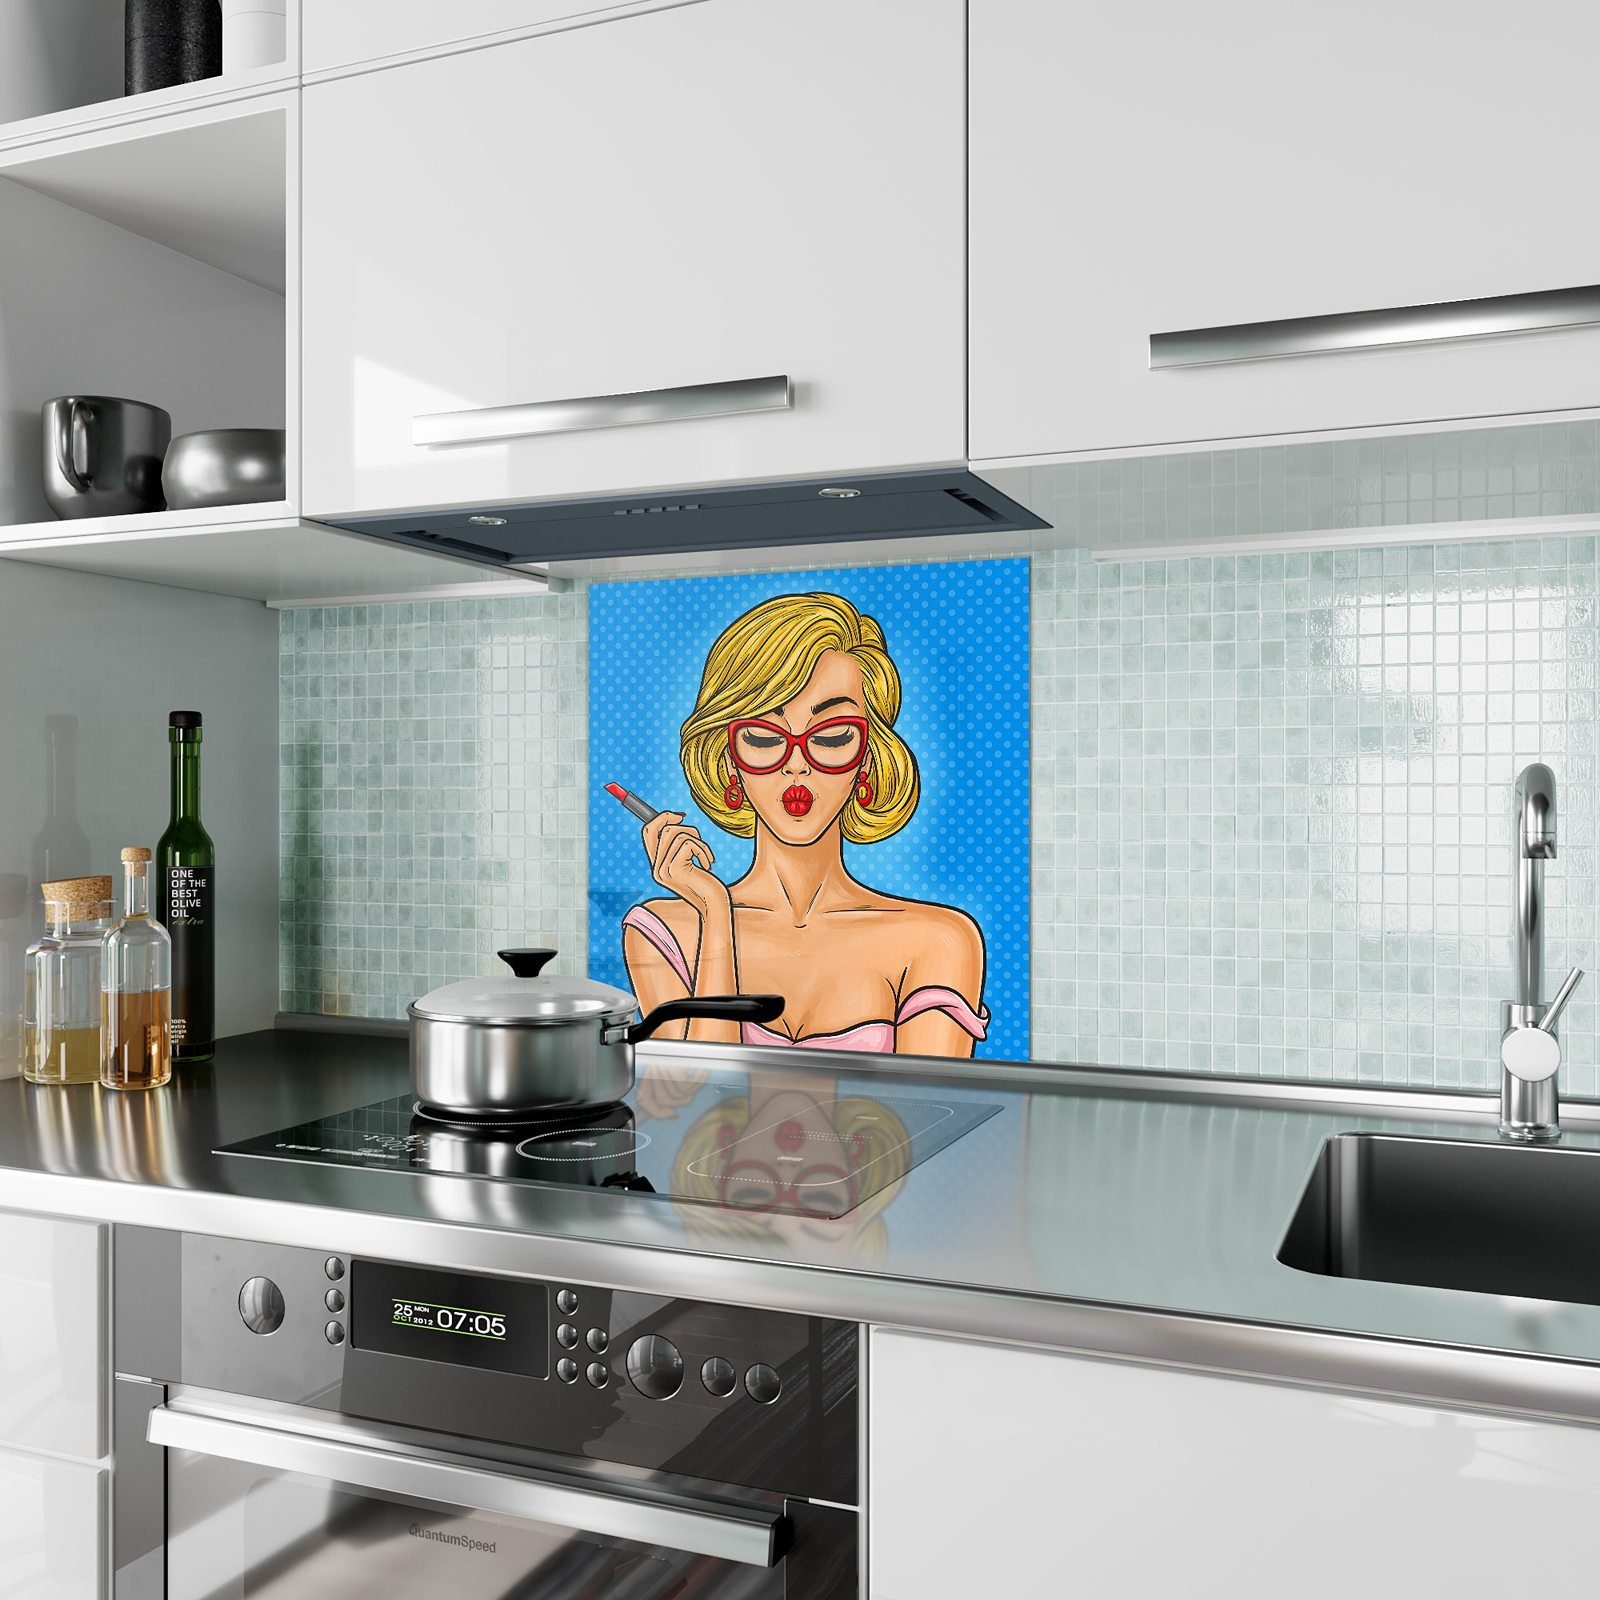 ihr Küchenrückwand Spritzschutz Primedeco Glas Lippen Motiv an mit malt Frau Küchenrückwand